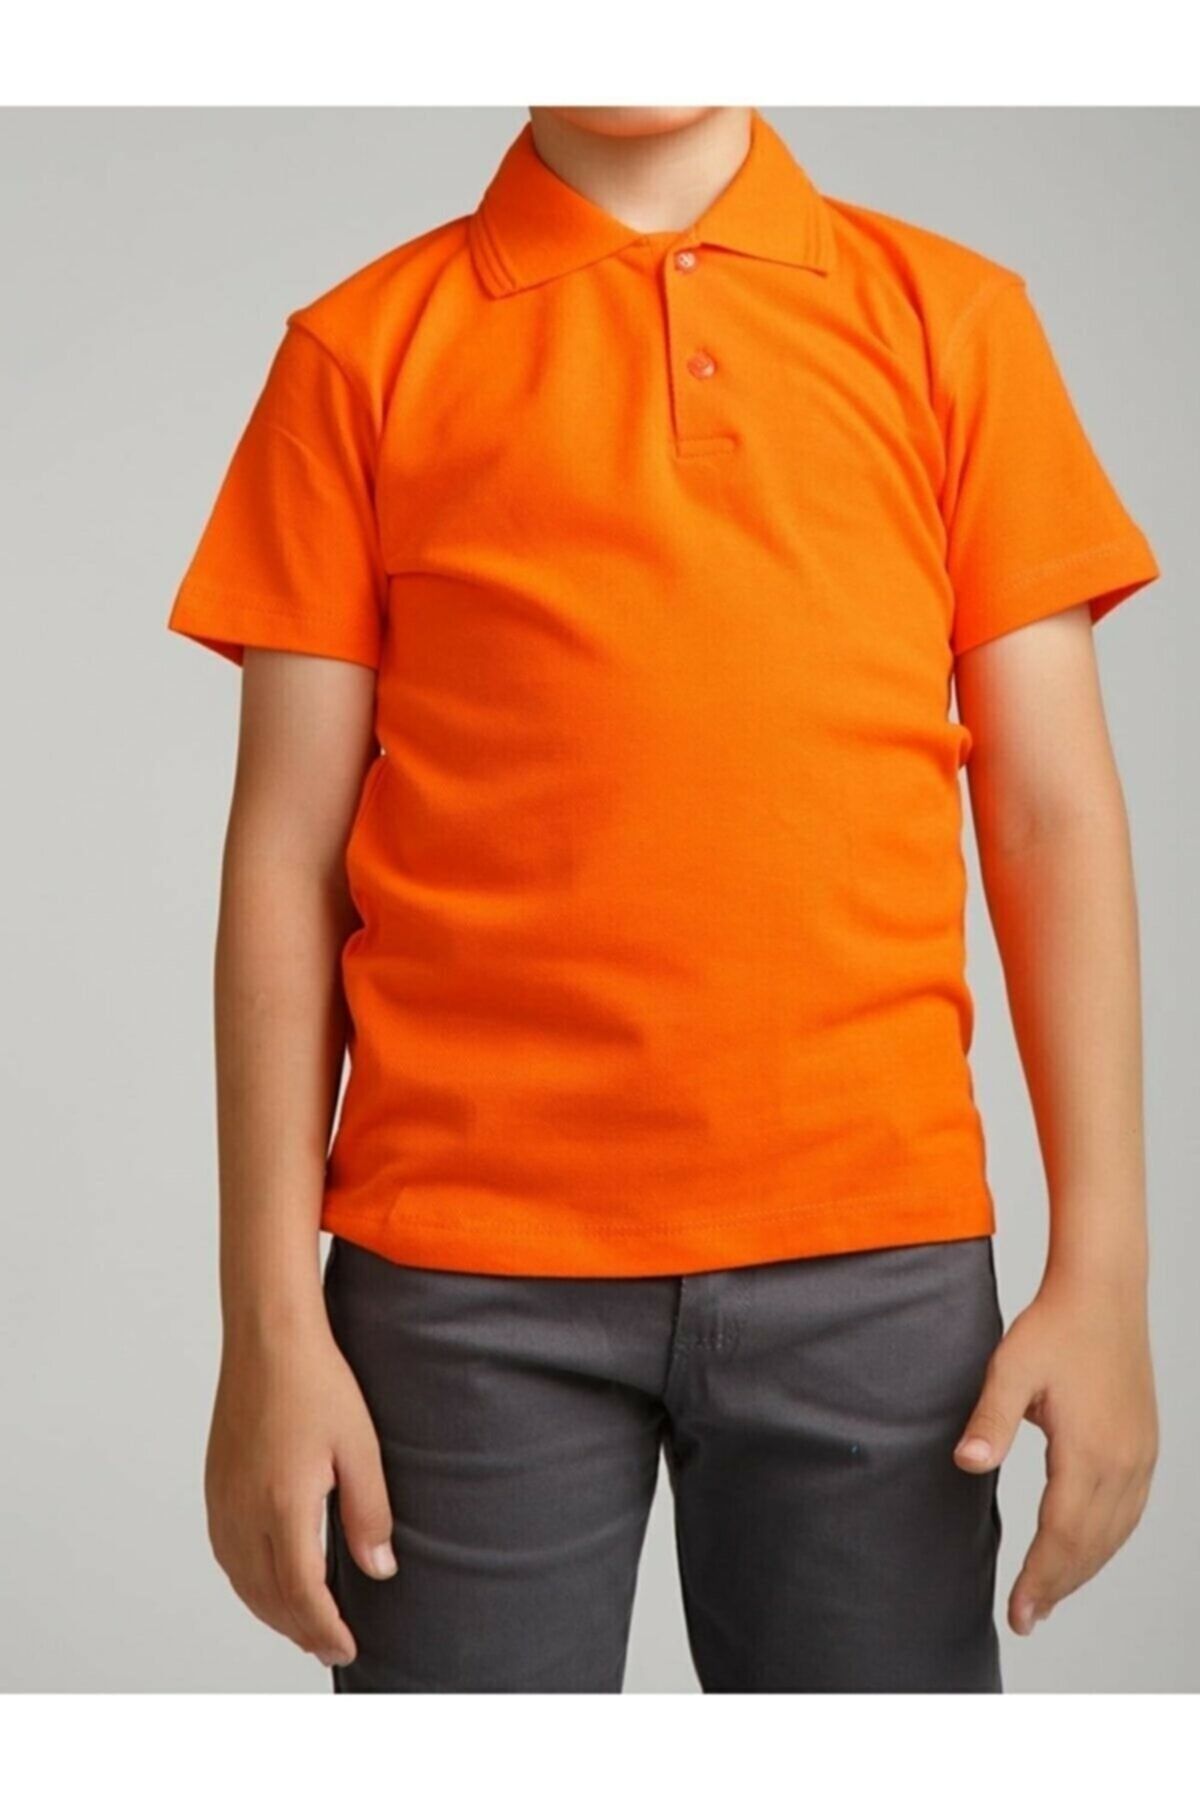 Genel Markalar Erkek Çocuk Polo Yaka Kısa Kol Okul T-shirt